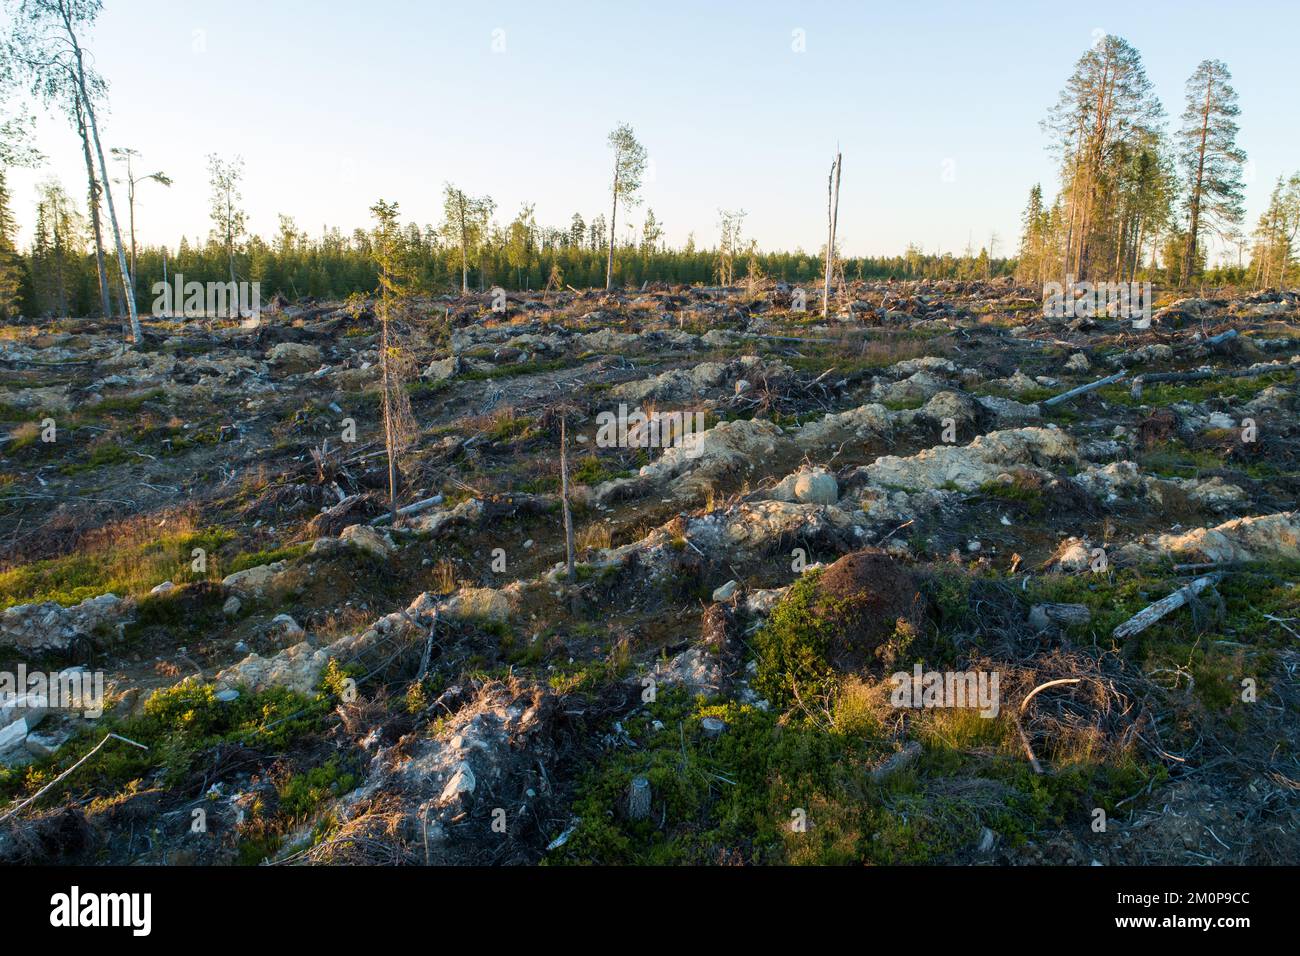 Photo en grand angle d'un grand anthill sur une zone minéralisée de coupe claire près d'Hossa, dans le nord de la Finlande Banque D'Images